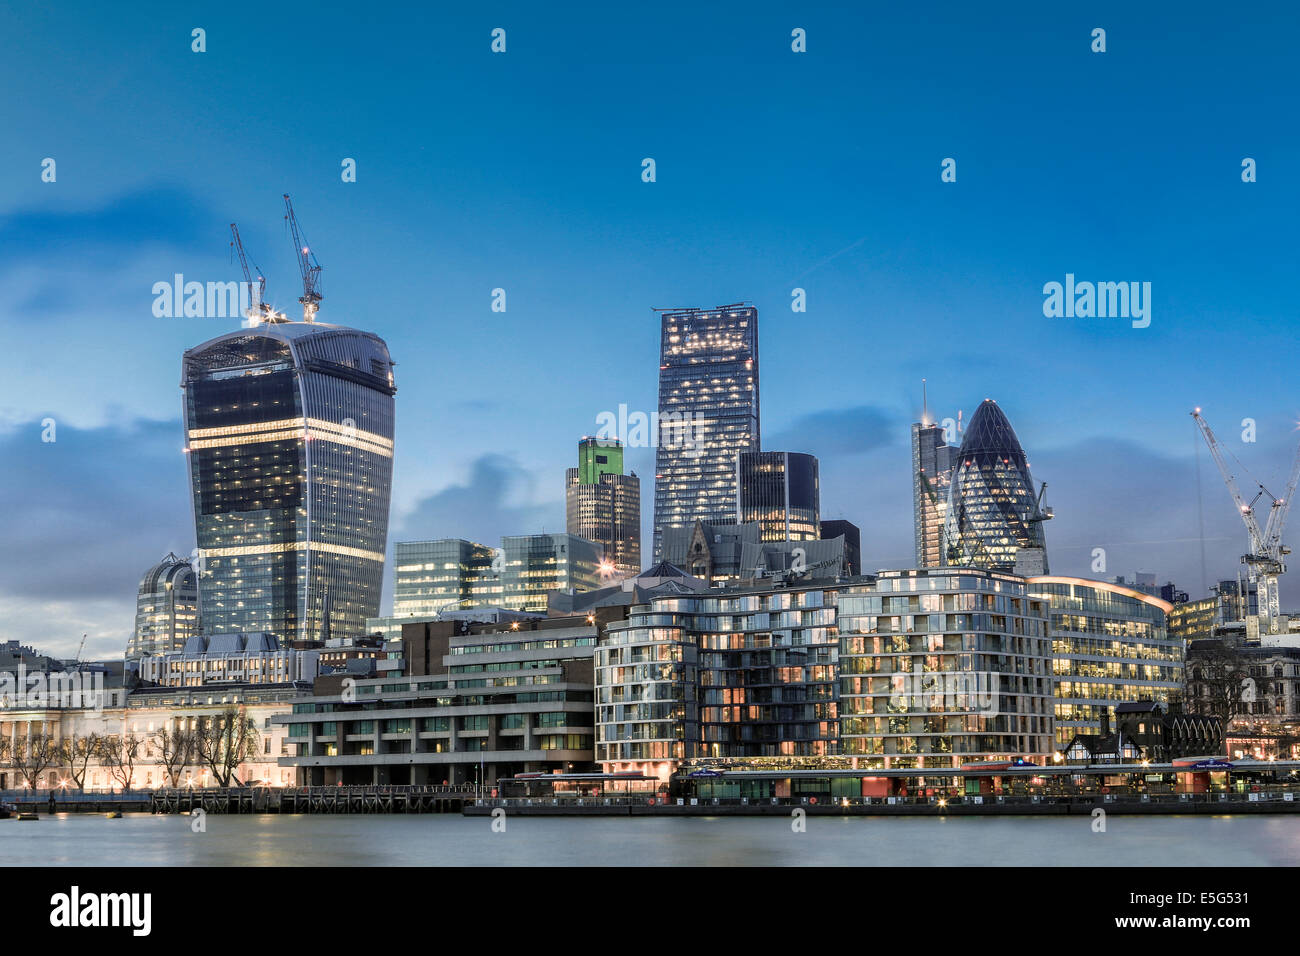 Der Londoner Financial & Geschäftsviertel, Skyline zeigt Gherkin, Cheesegrater und Walkie Talkie Gebäude, London, UK Stockfoto